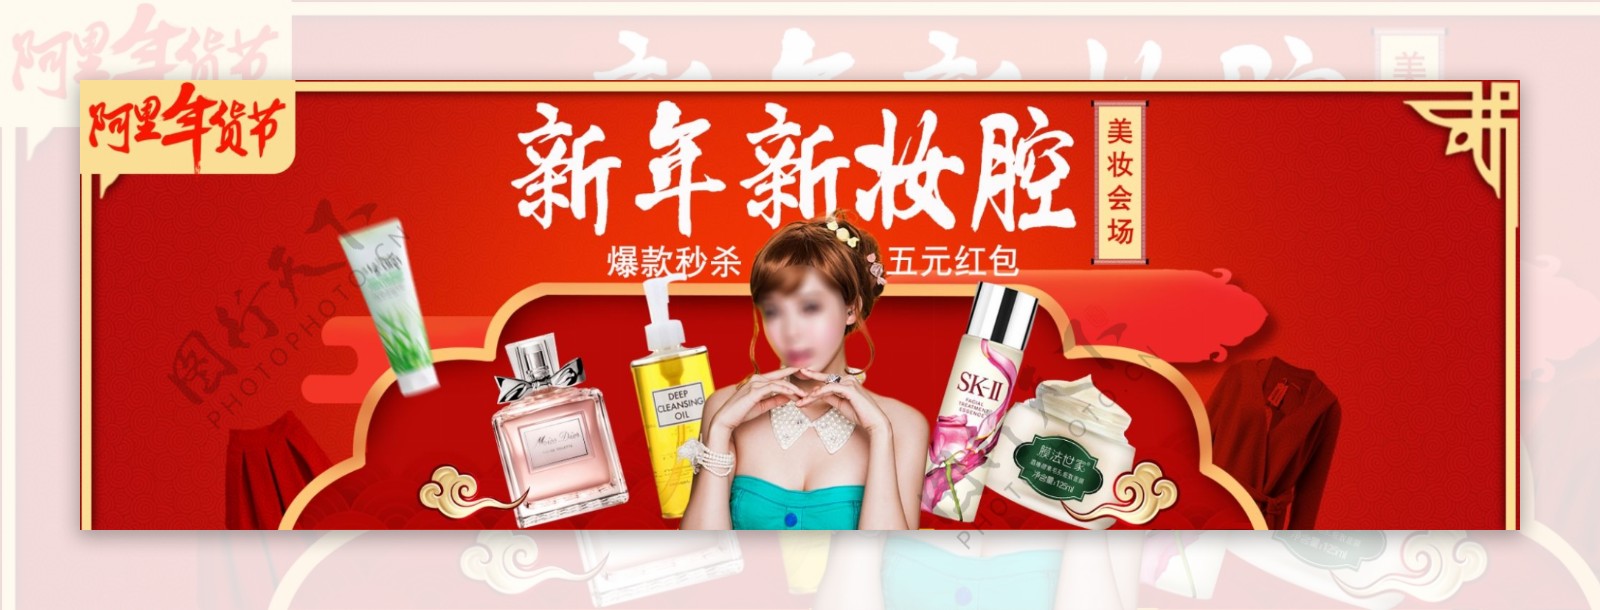 天猫年货节化妆品促销海报banner